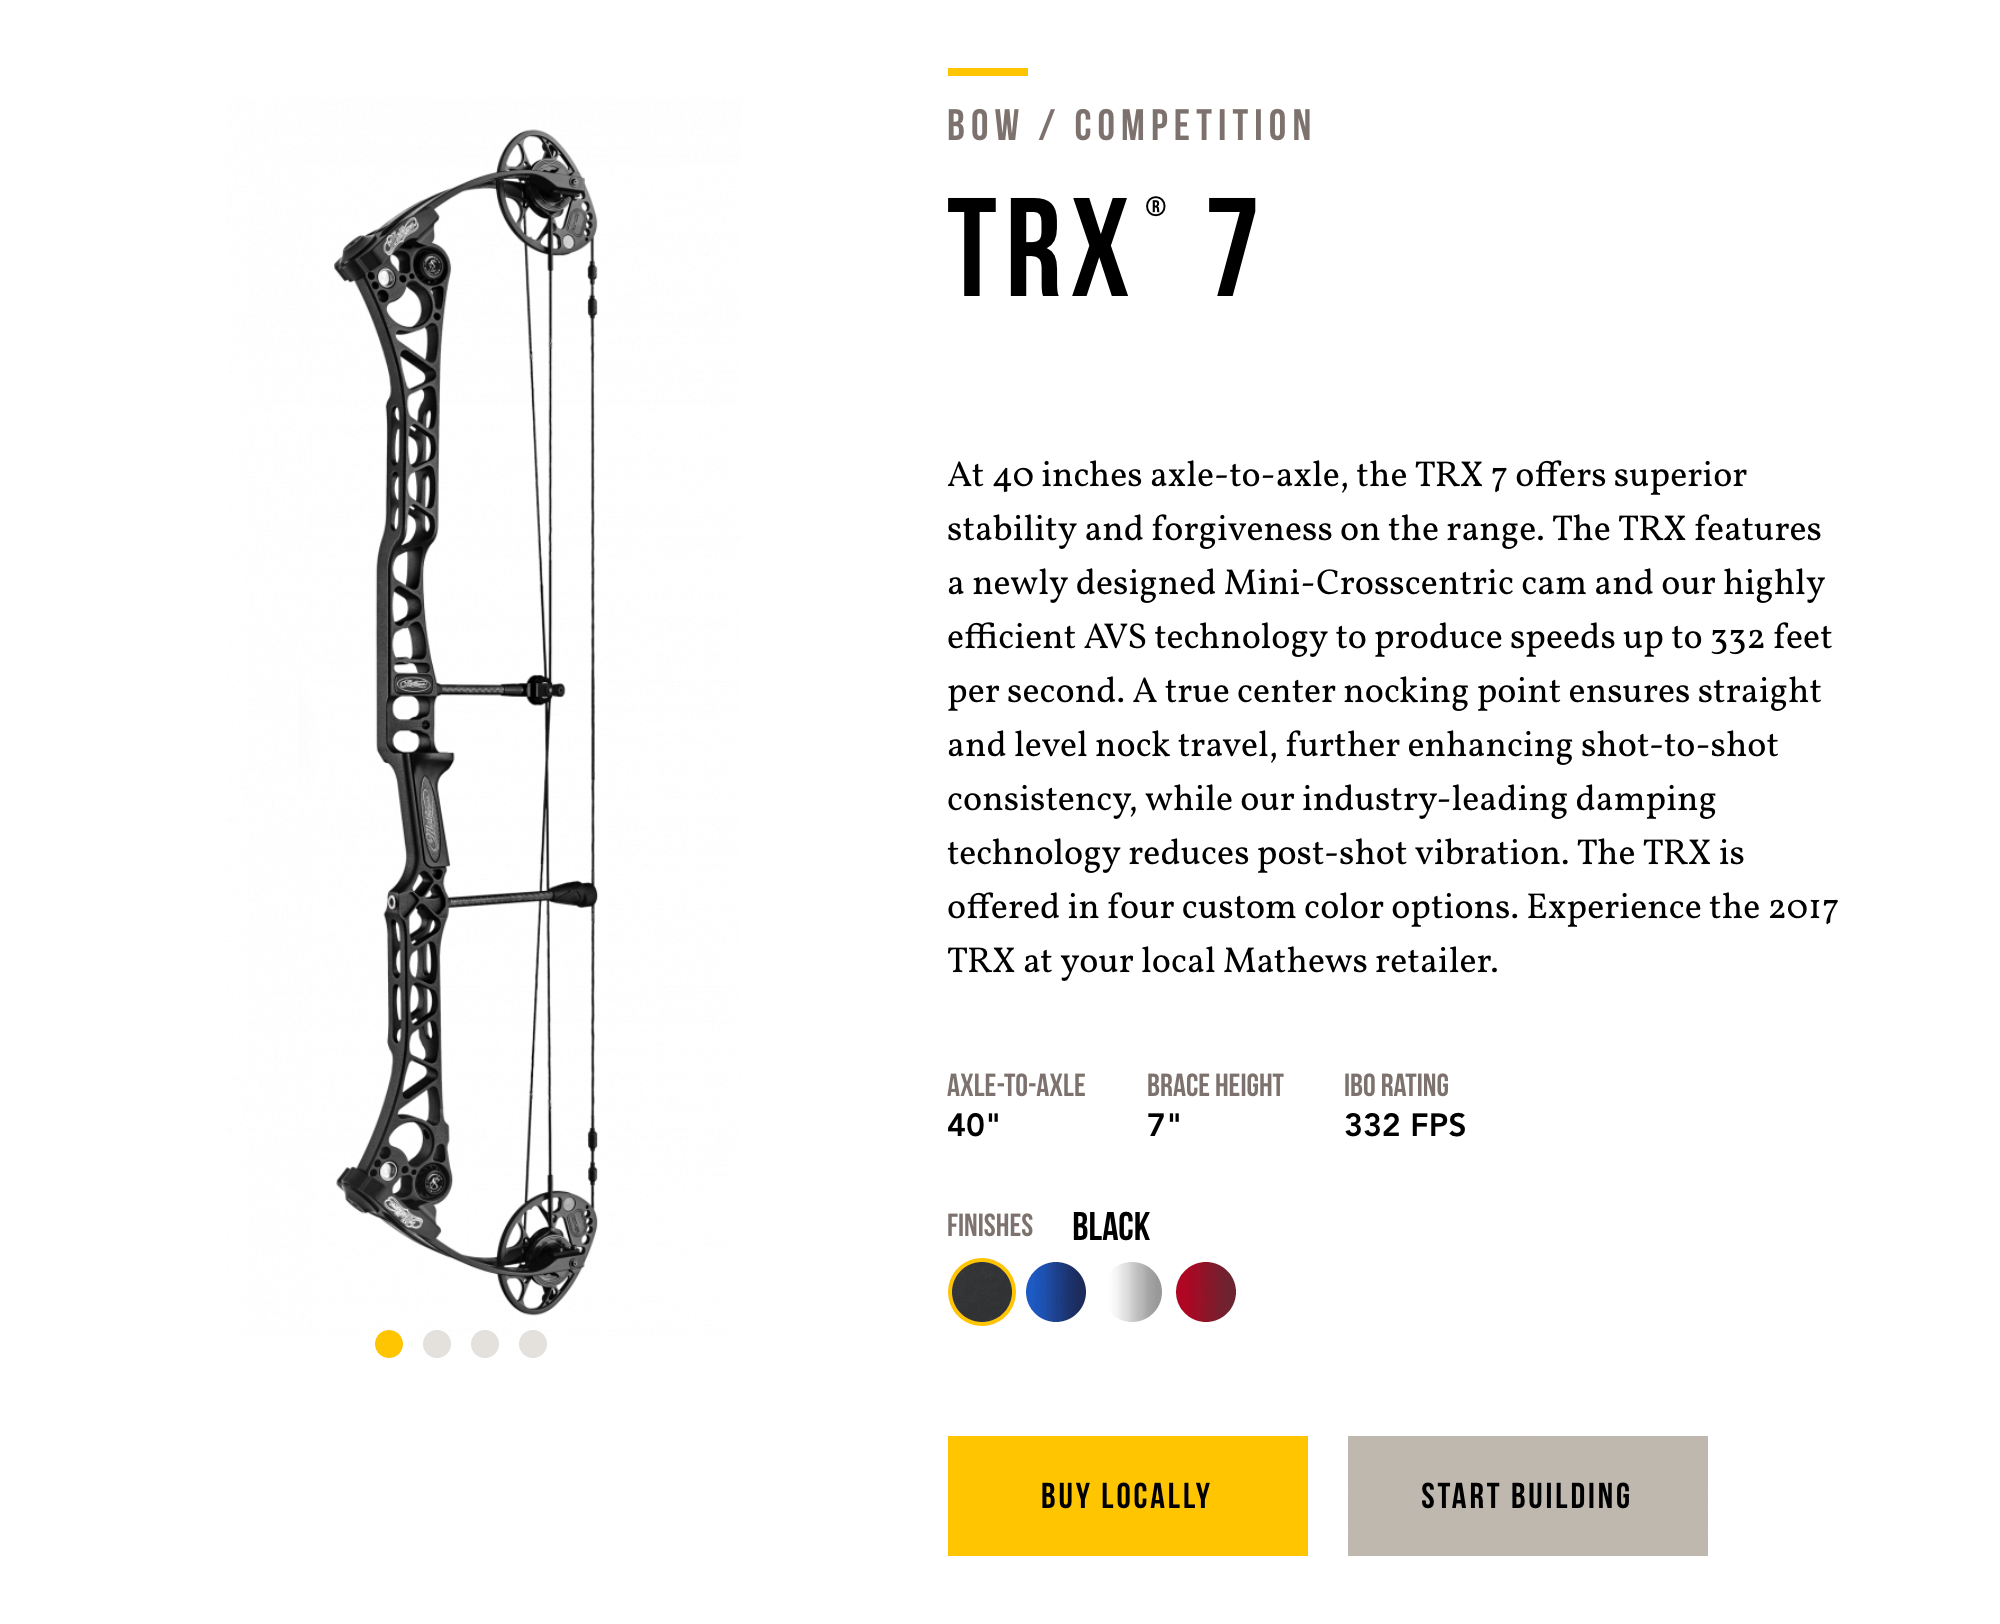 Самый дорогой блочный лук, который я встречала в интернете, — это модель TRX 7 фирмы Mathews. Она стоит 122 300 рублей, и это без обвеса и доставки